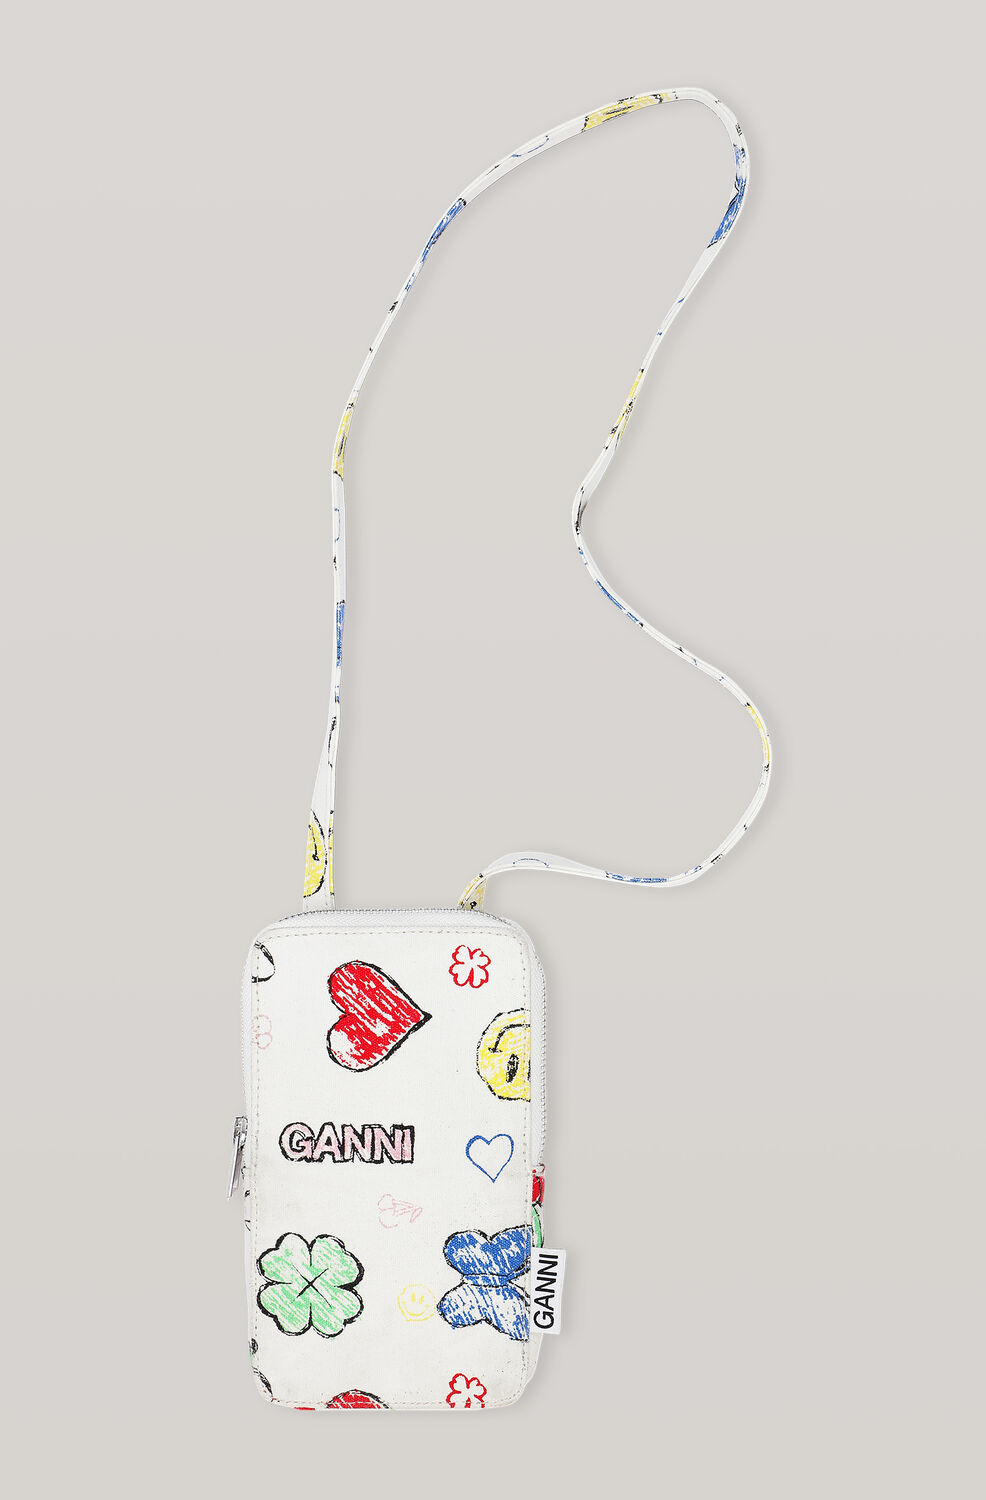 Ganni Cotton Canvas Phone Bag,Multicolour